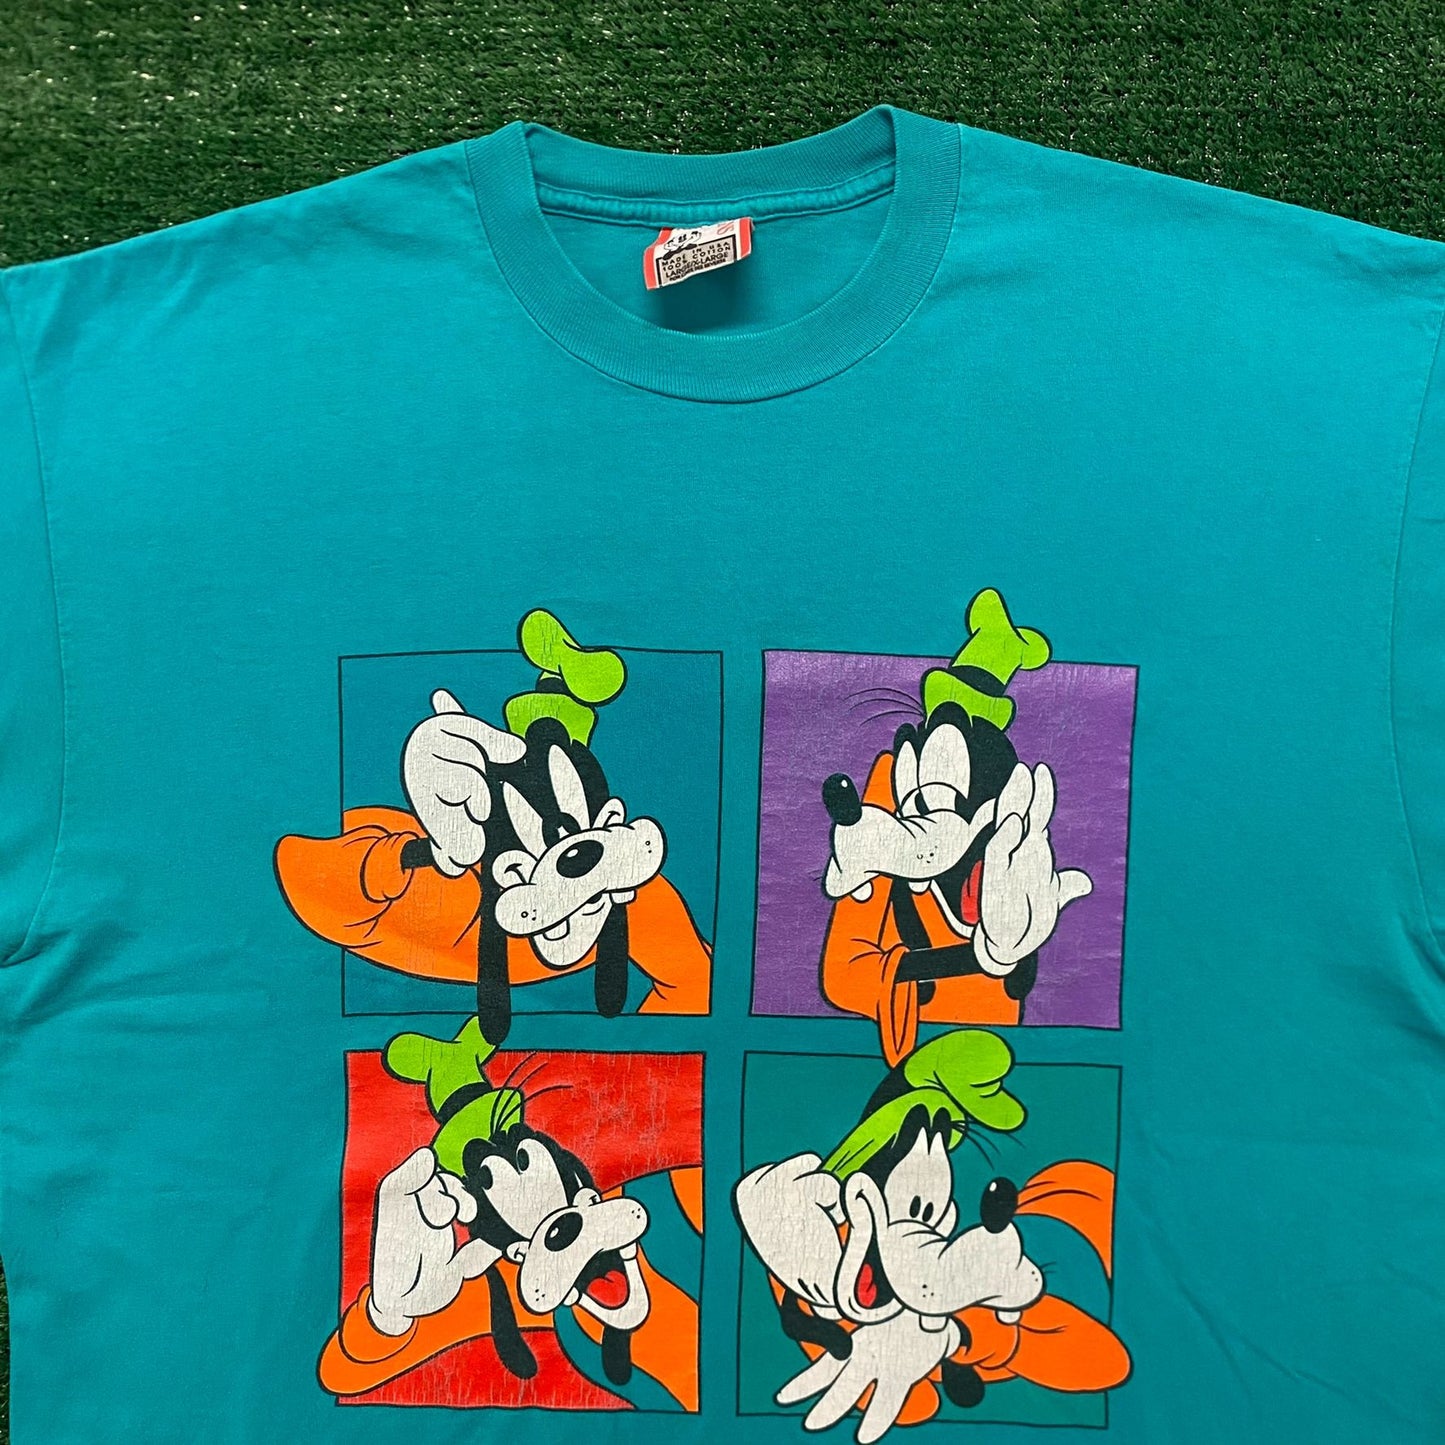 Goofy Pop Art Vintage 90s Cartoon T-Shirt